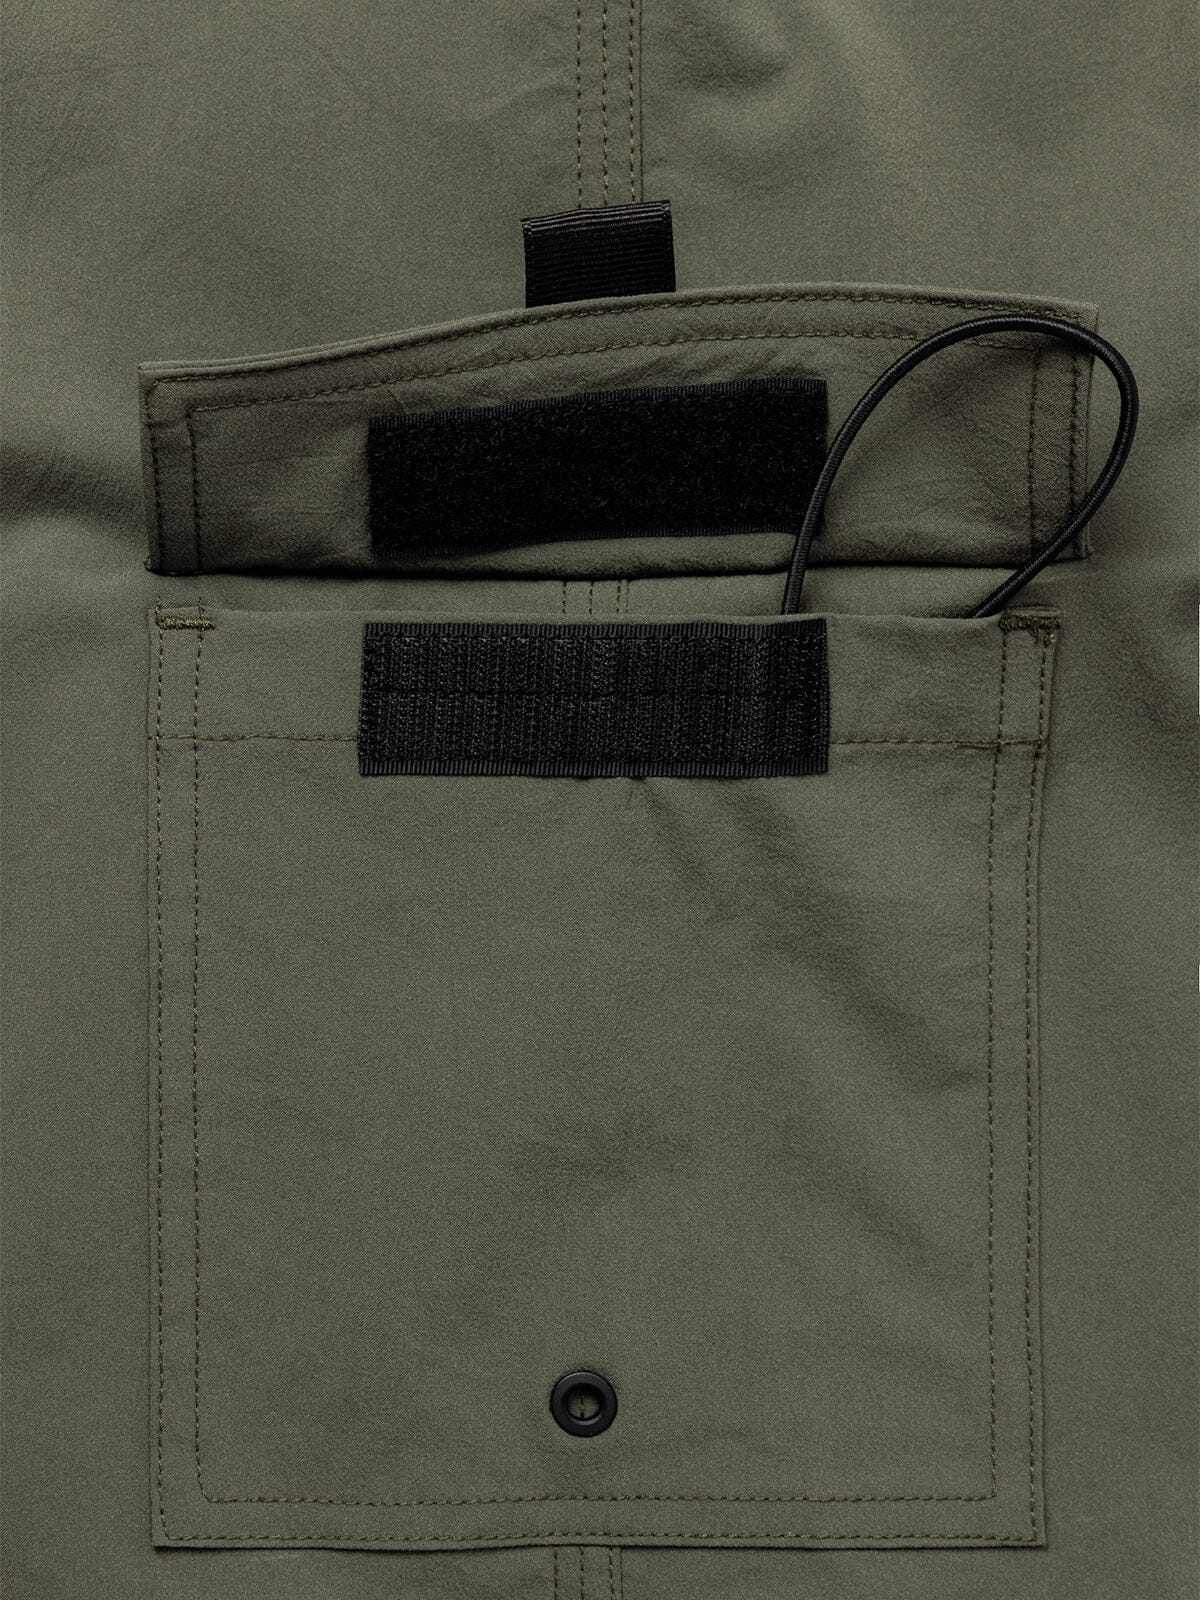 Ocho by Mission Workshop - Wetterfeste Taschen und technische Bekleidung - San Francisco & Los Angeles - Für die Ewigkeit gebaut - Garantiert